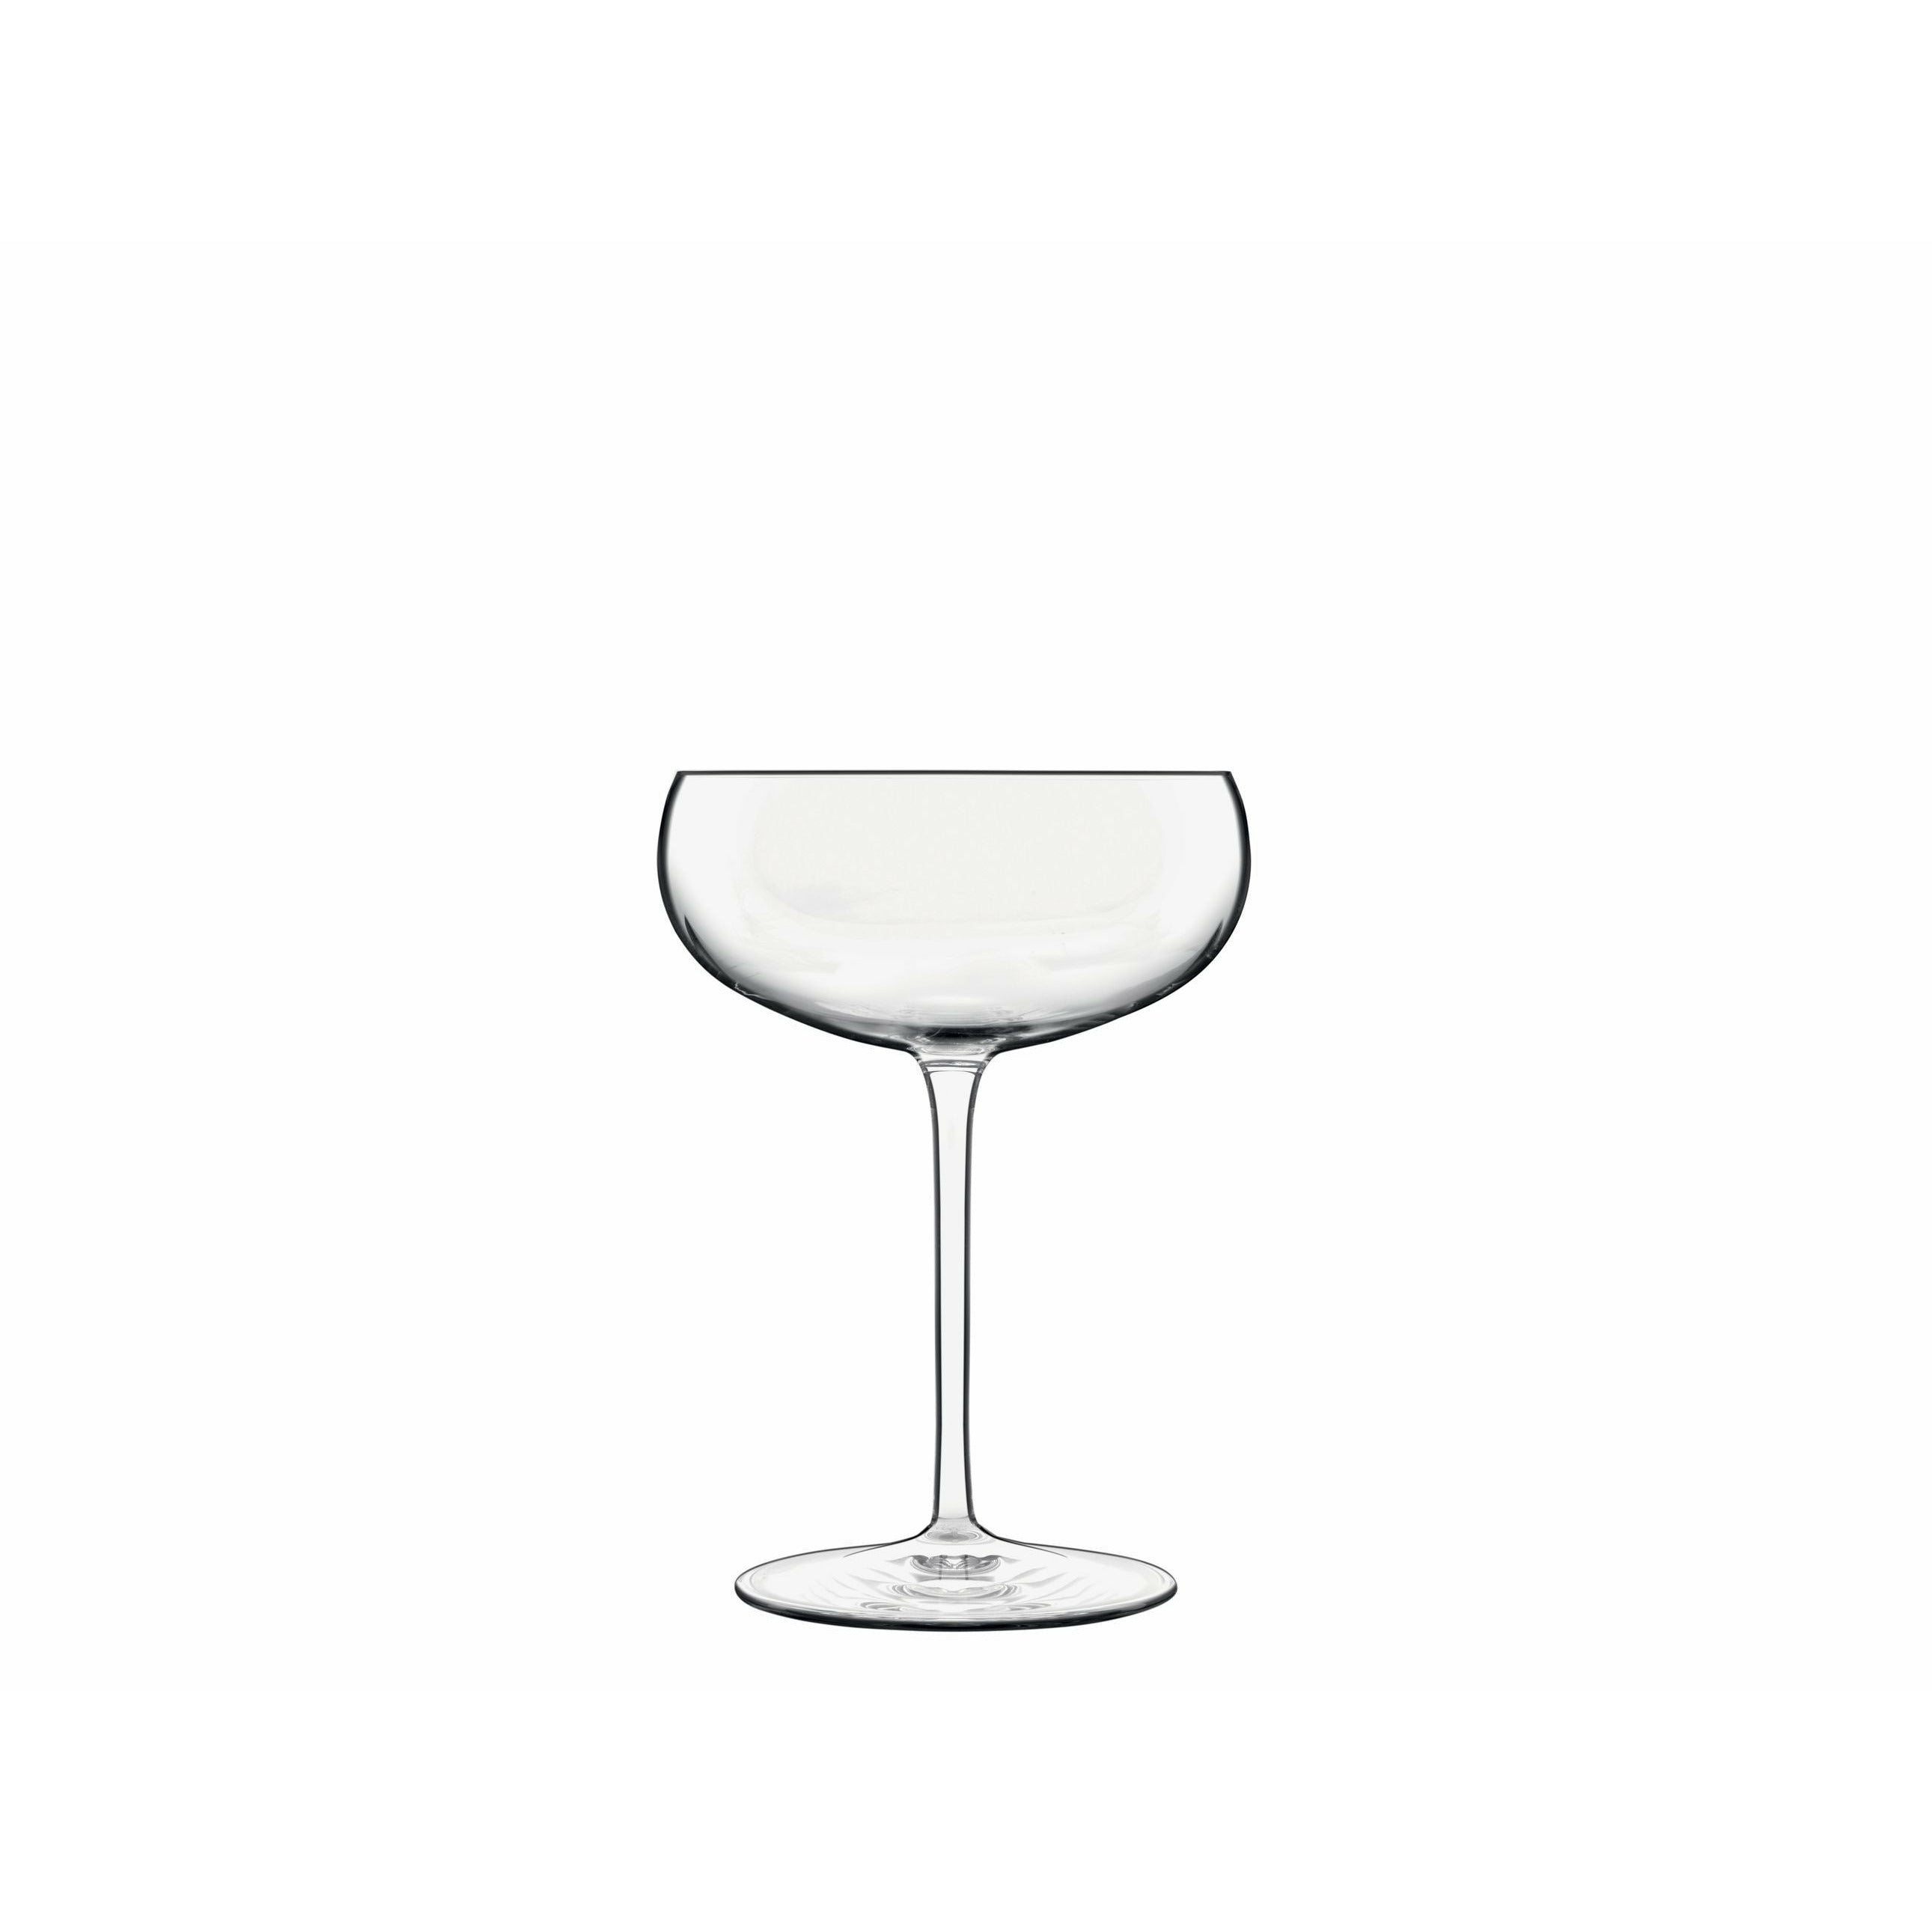 Luigi Bormioli Talismano -cocktailglas/martini -glas, 2 stuks